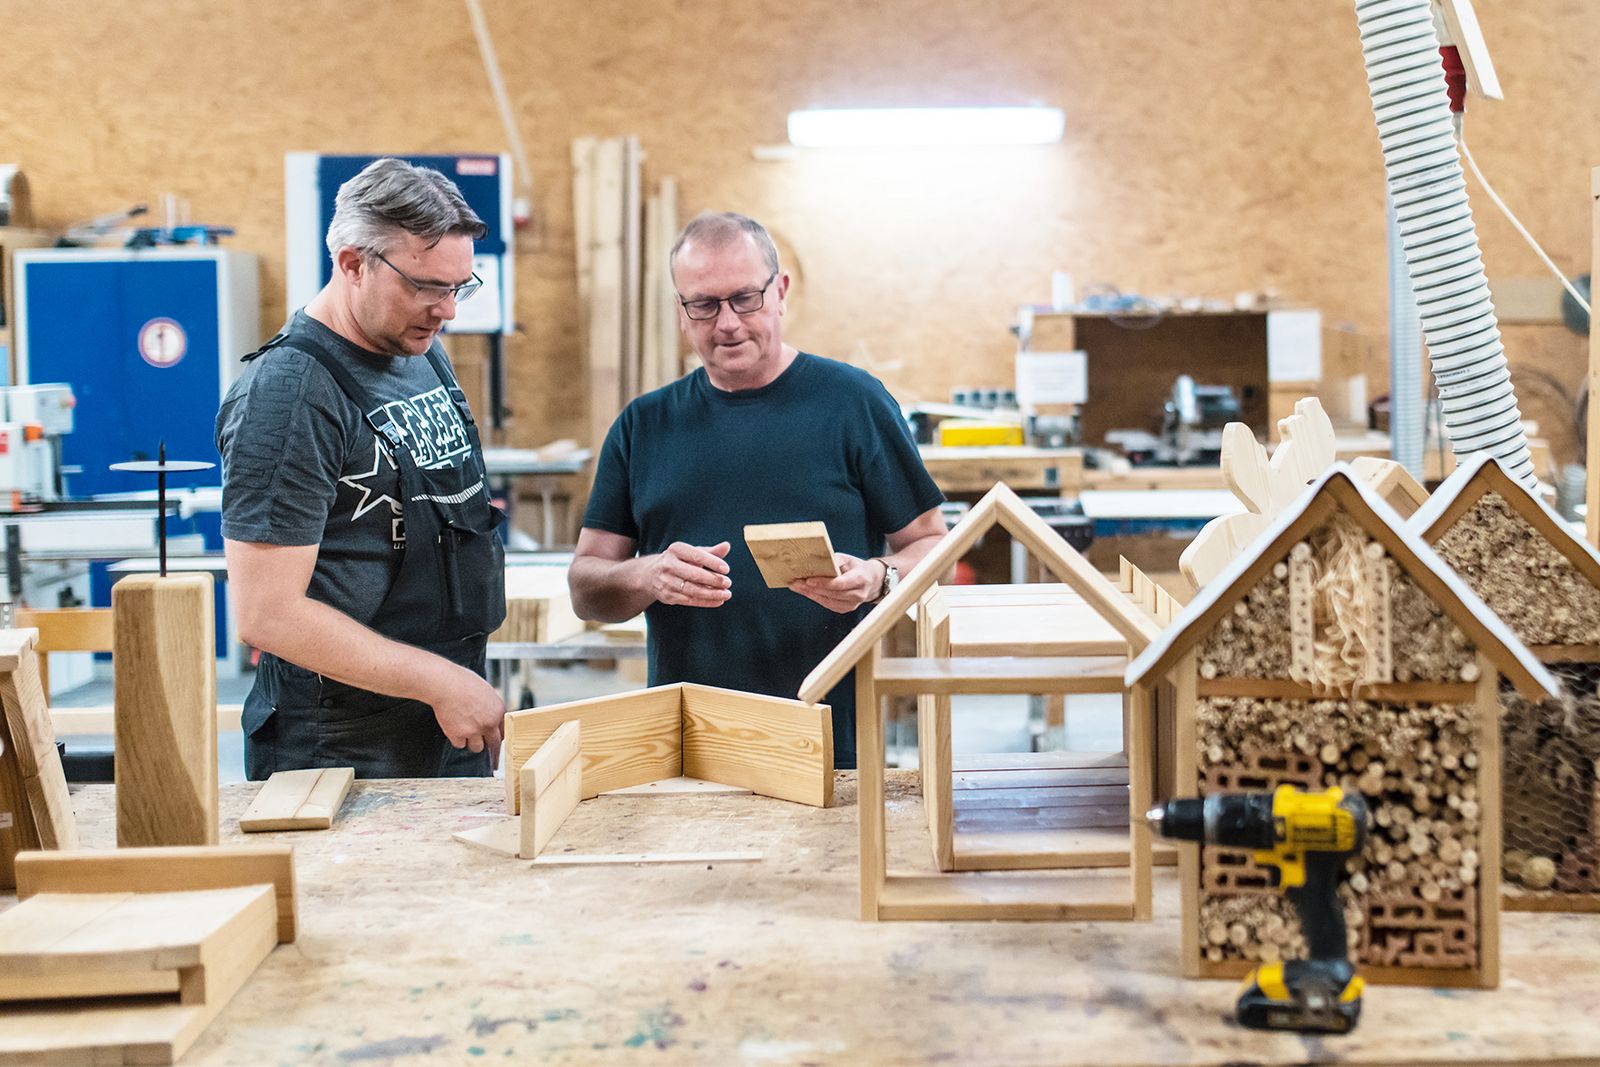 Anleitung in der Holzwerkstatt. Bild mit zwei Männern in Arbeitskleidung